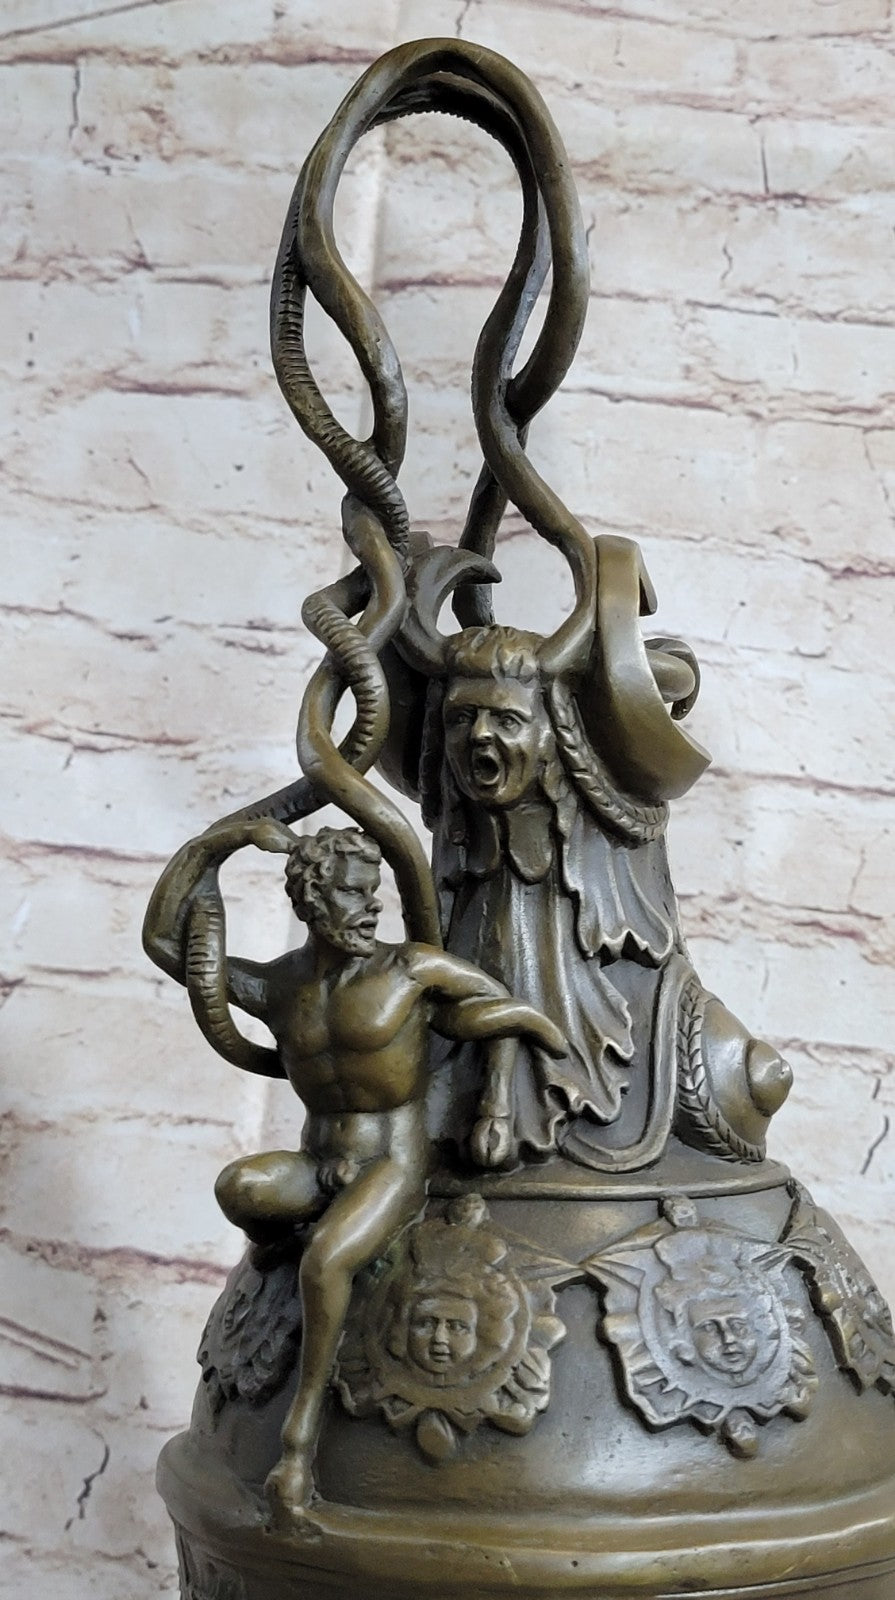 Centaur Mythology Fantasy Erotic Sensual Exotic Male Nude Bronze Statue Gift